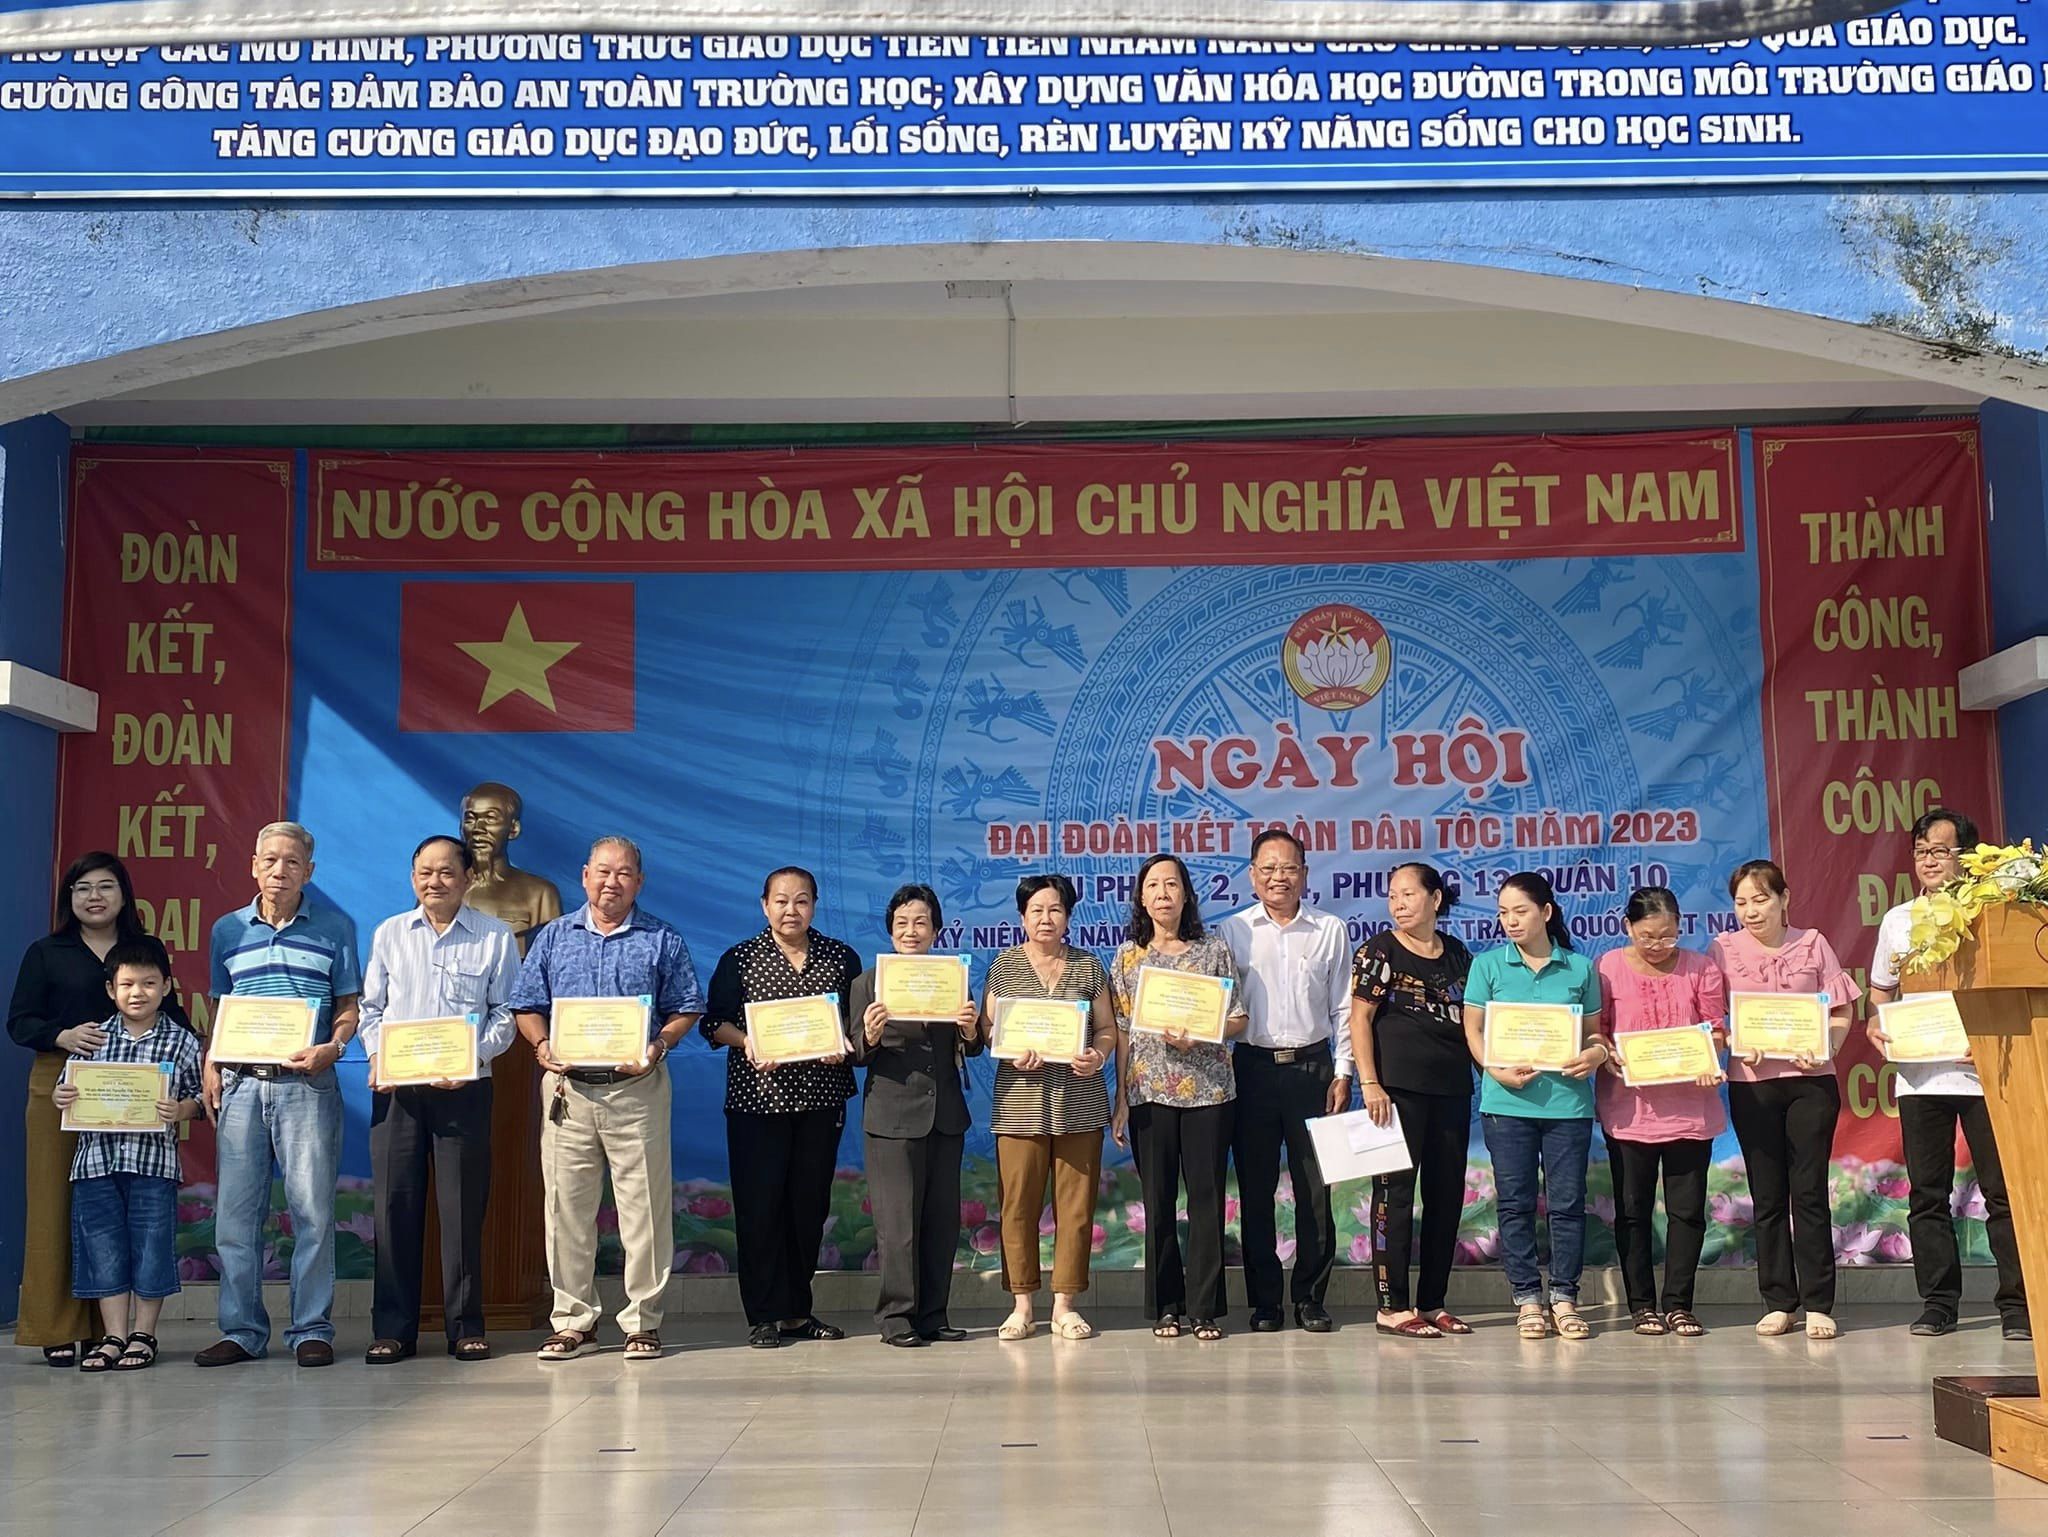 Image: Khu phố 1, 2 3 và 4 - Phường 13 tổ chức ngày hội Đại đoàn kết toàn dân tộc năm 2023 và Kỷ niệm 93 năm ngày truyền thống công tác Mặt trận Tổ quốc Việt Nam (18/11/1930 - 18/11/2023)